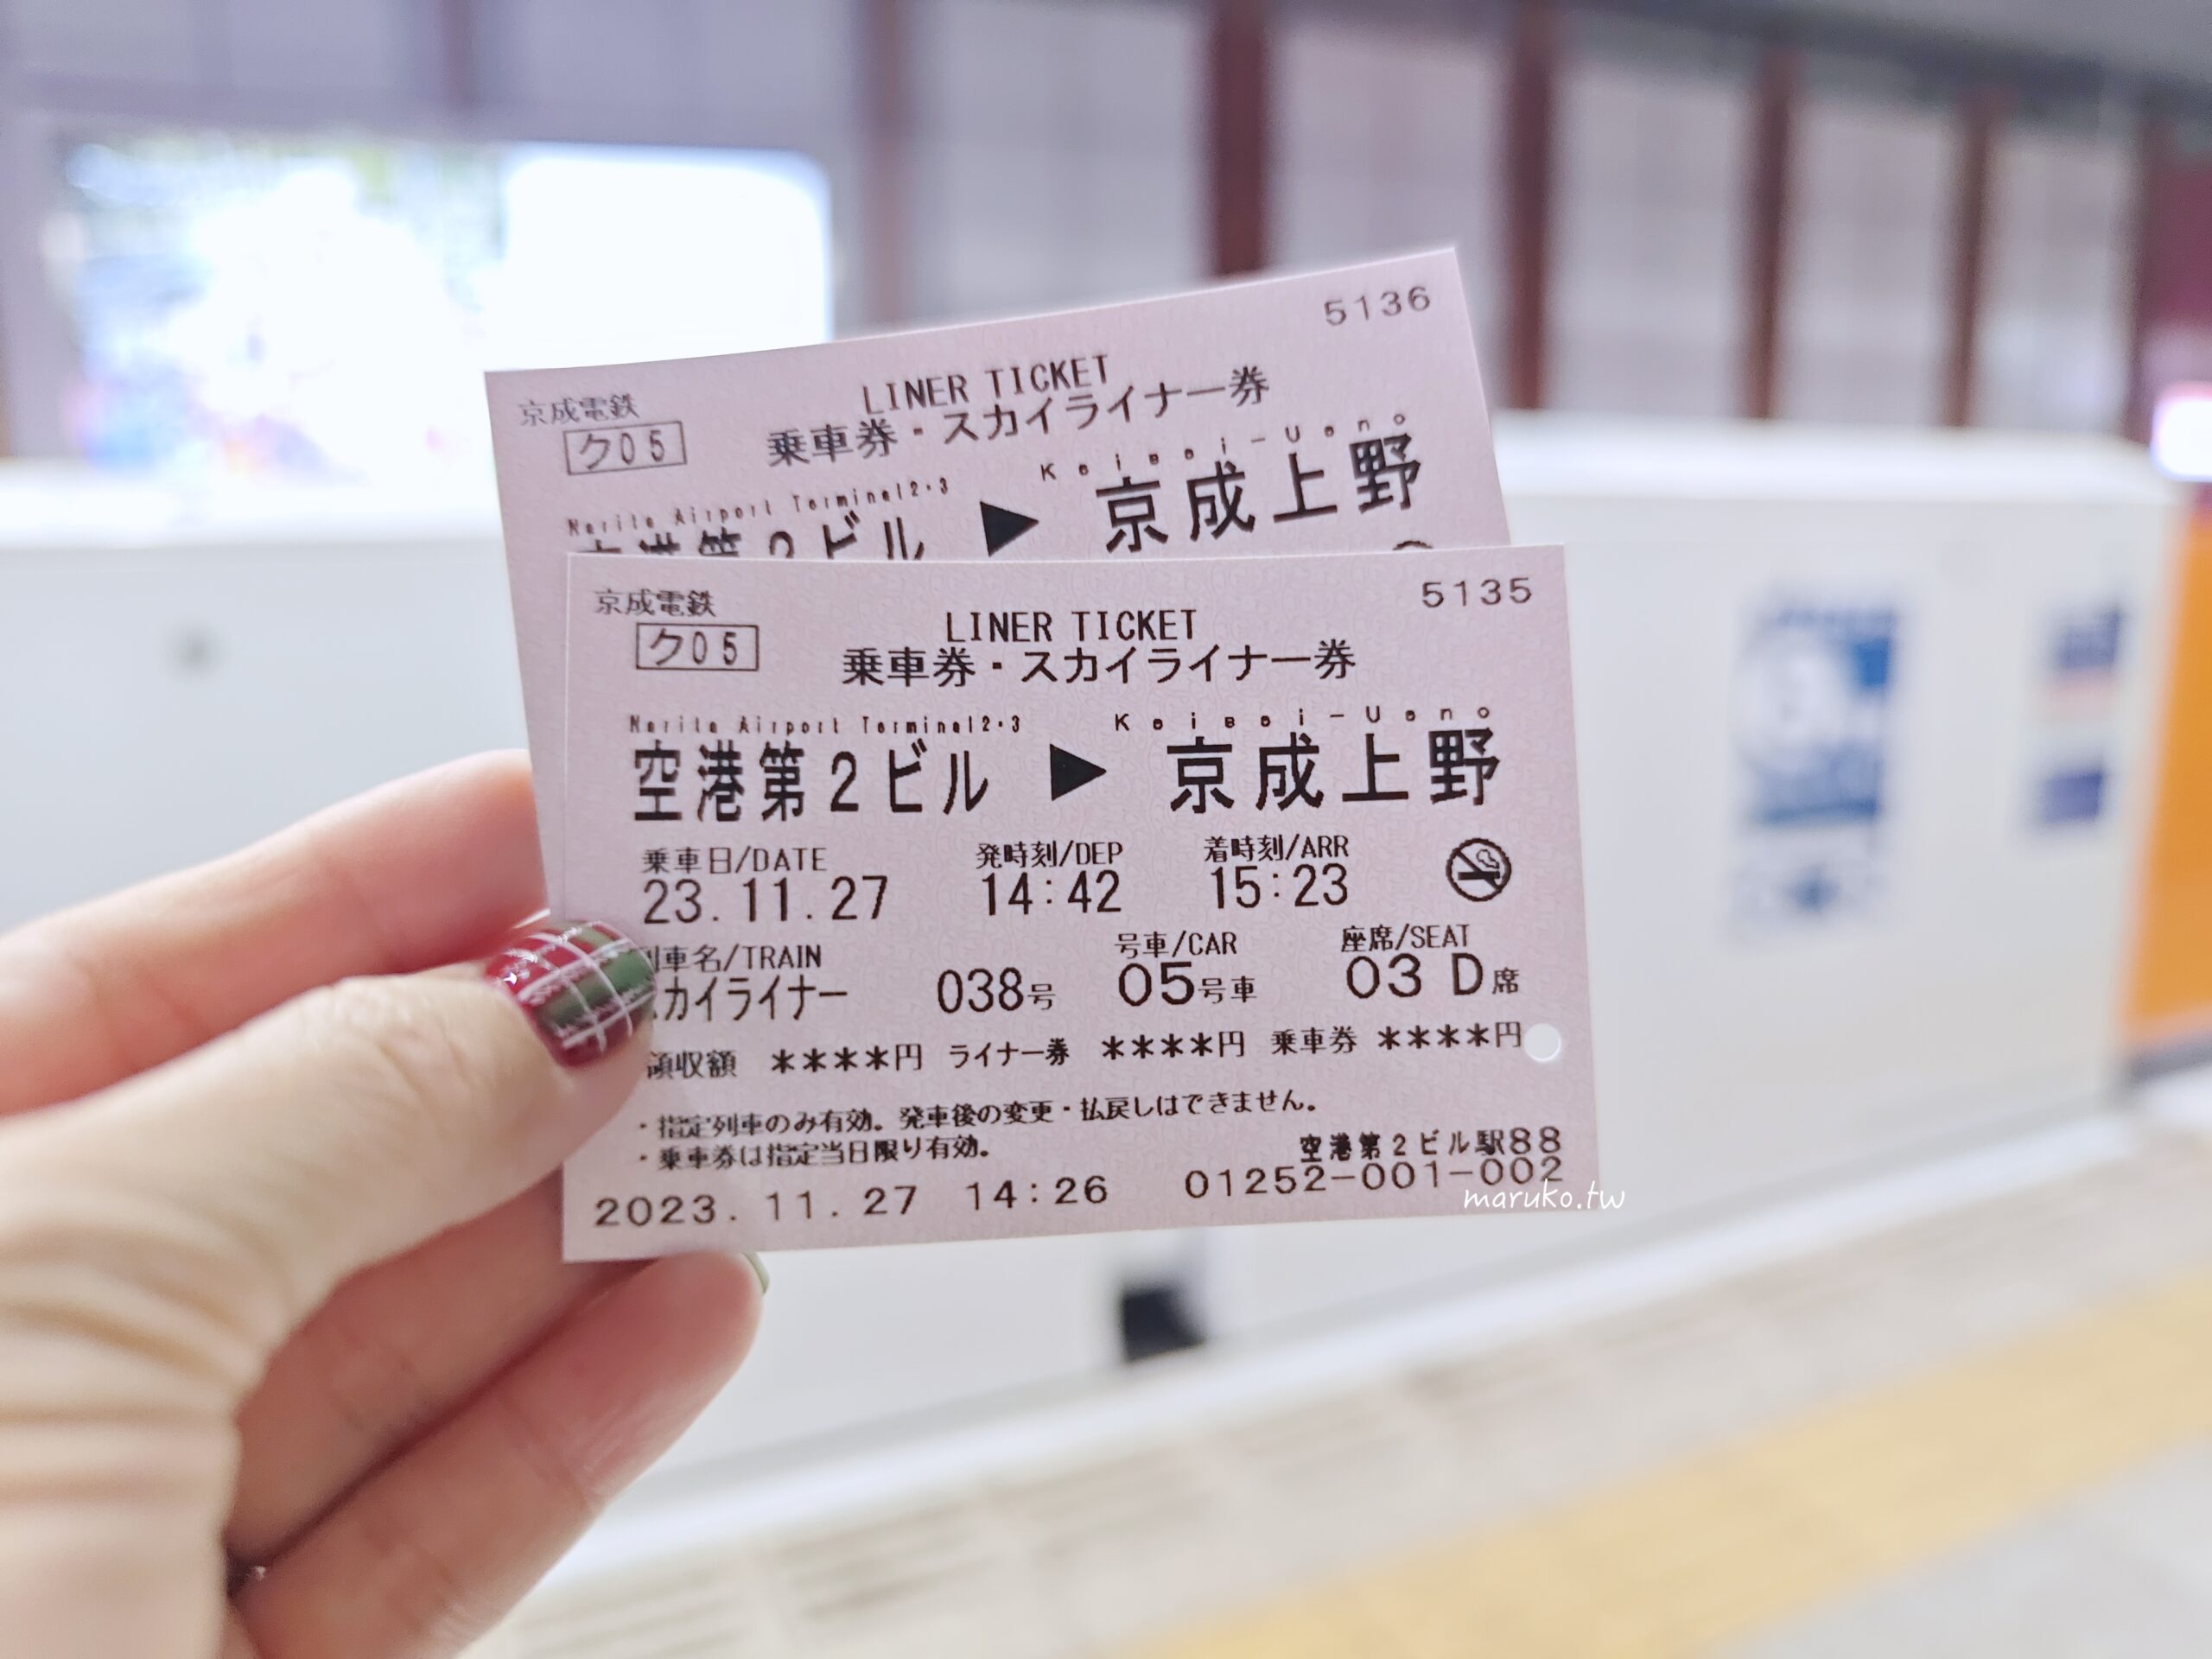 【東京交通】skyliner 京成電鐵 進入東京上野、日暮里最快的交通方式，全程指定席只要36分鐘！ @Maruko與美食有個約會